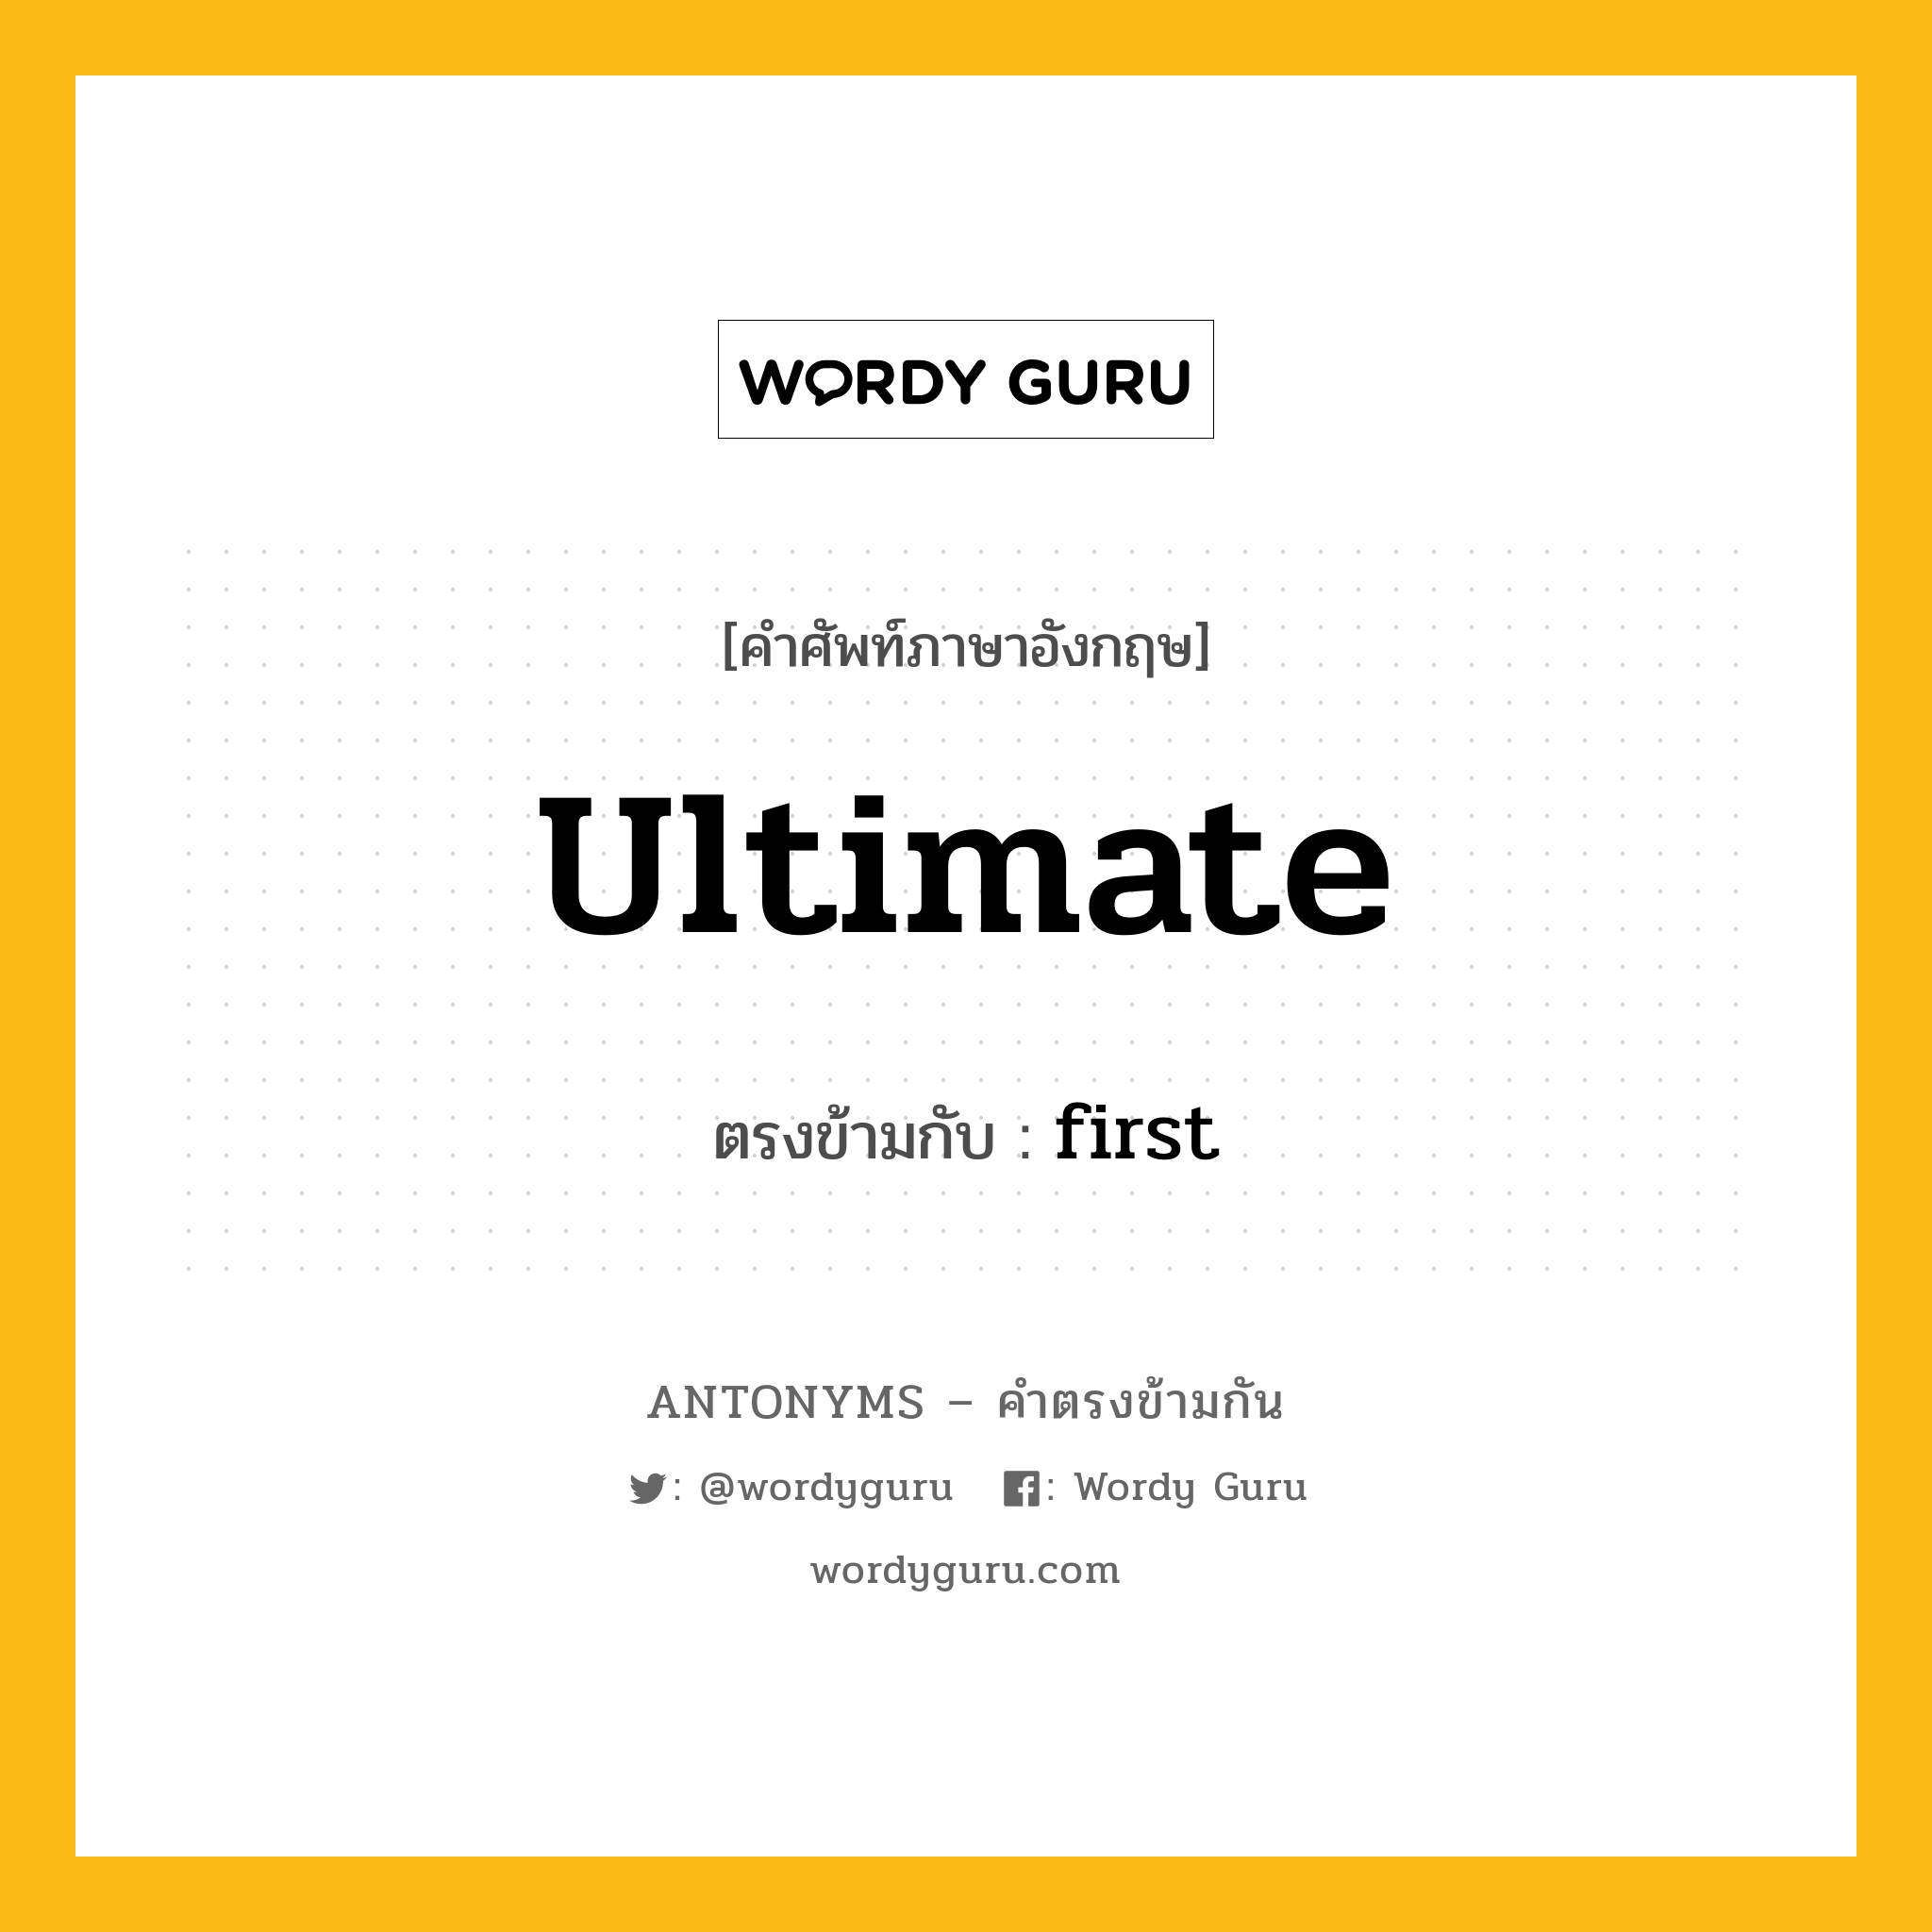 ultimate เป็นคำตรงข้ามกับคำไหนบ้าง?, คำศัพท์ภาษาอังกฤษ ultimate ตรงข้ามกับ first หมวด first